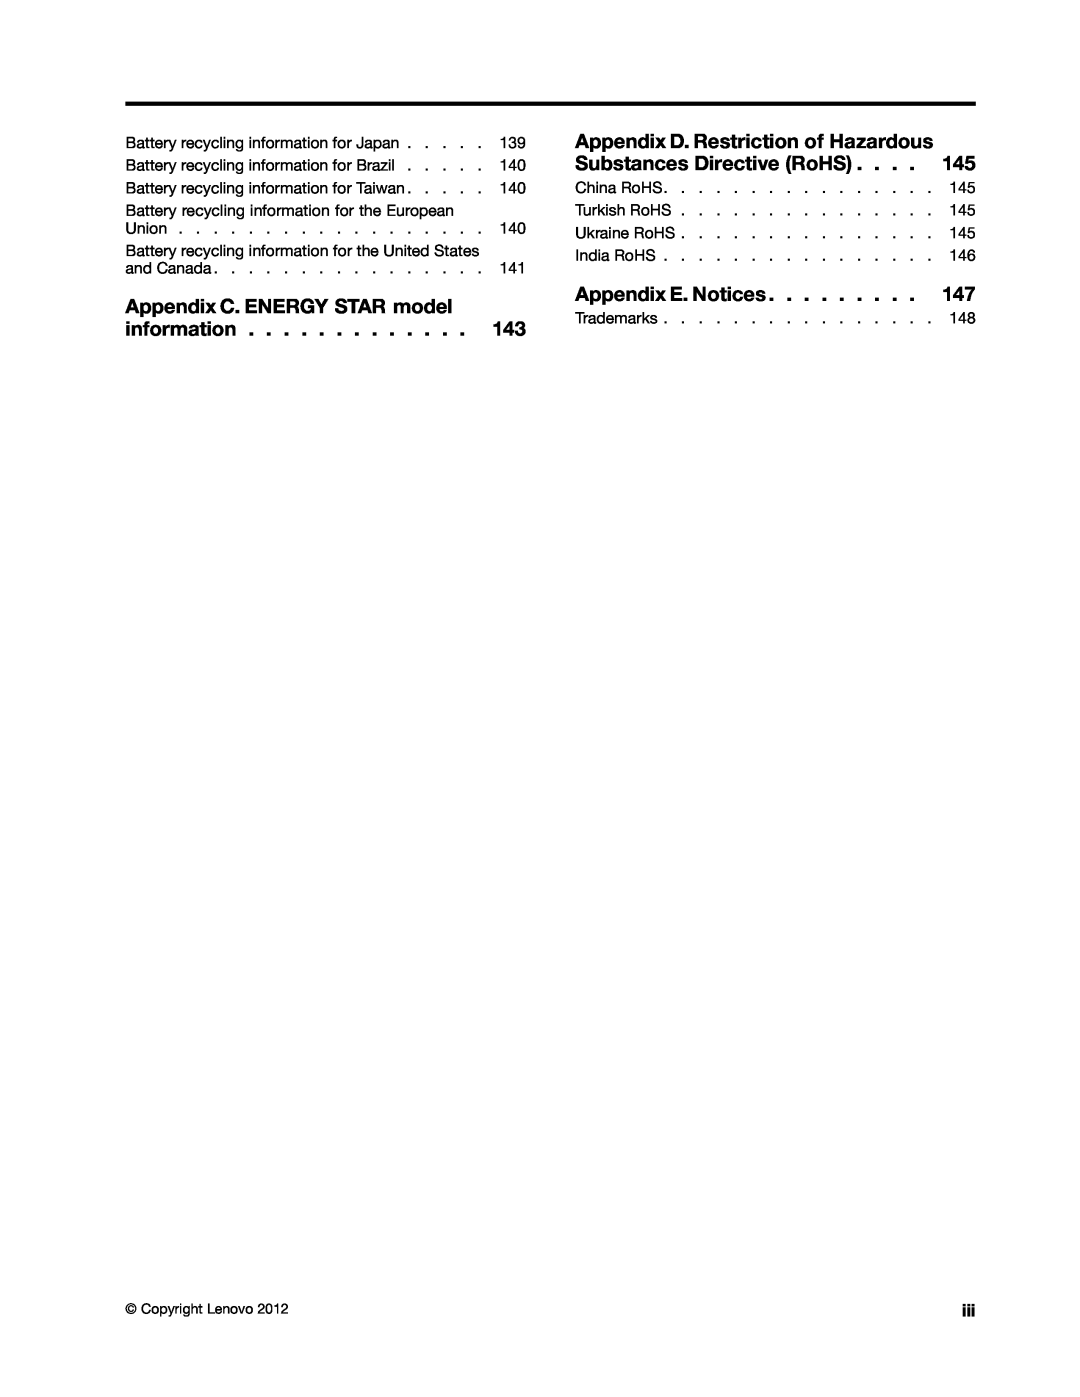 Lenovo X131E Appendix C. ENERGY STAR model information, Appendix D. Restriction of Hazardous Substances Directive RoHS 